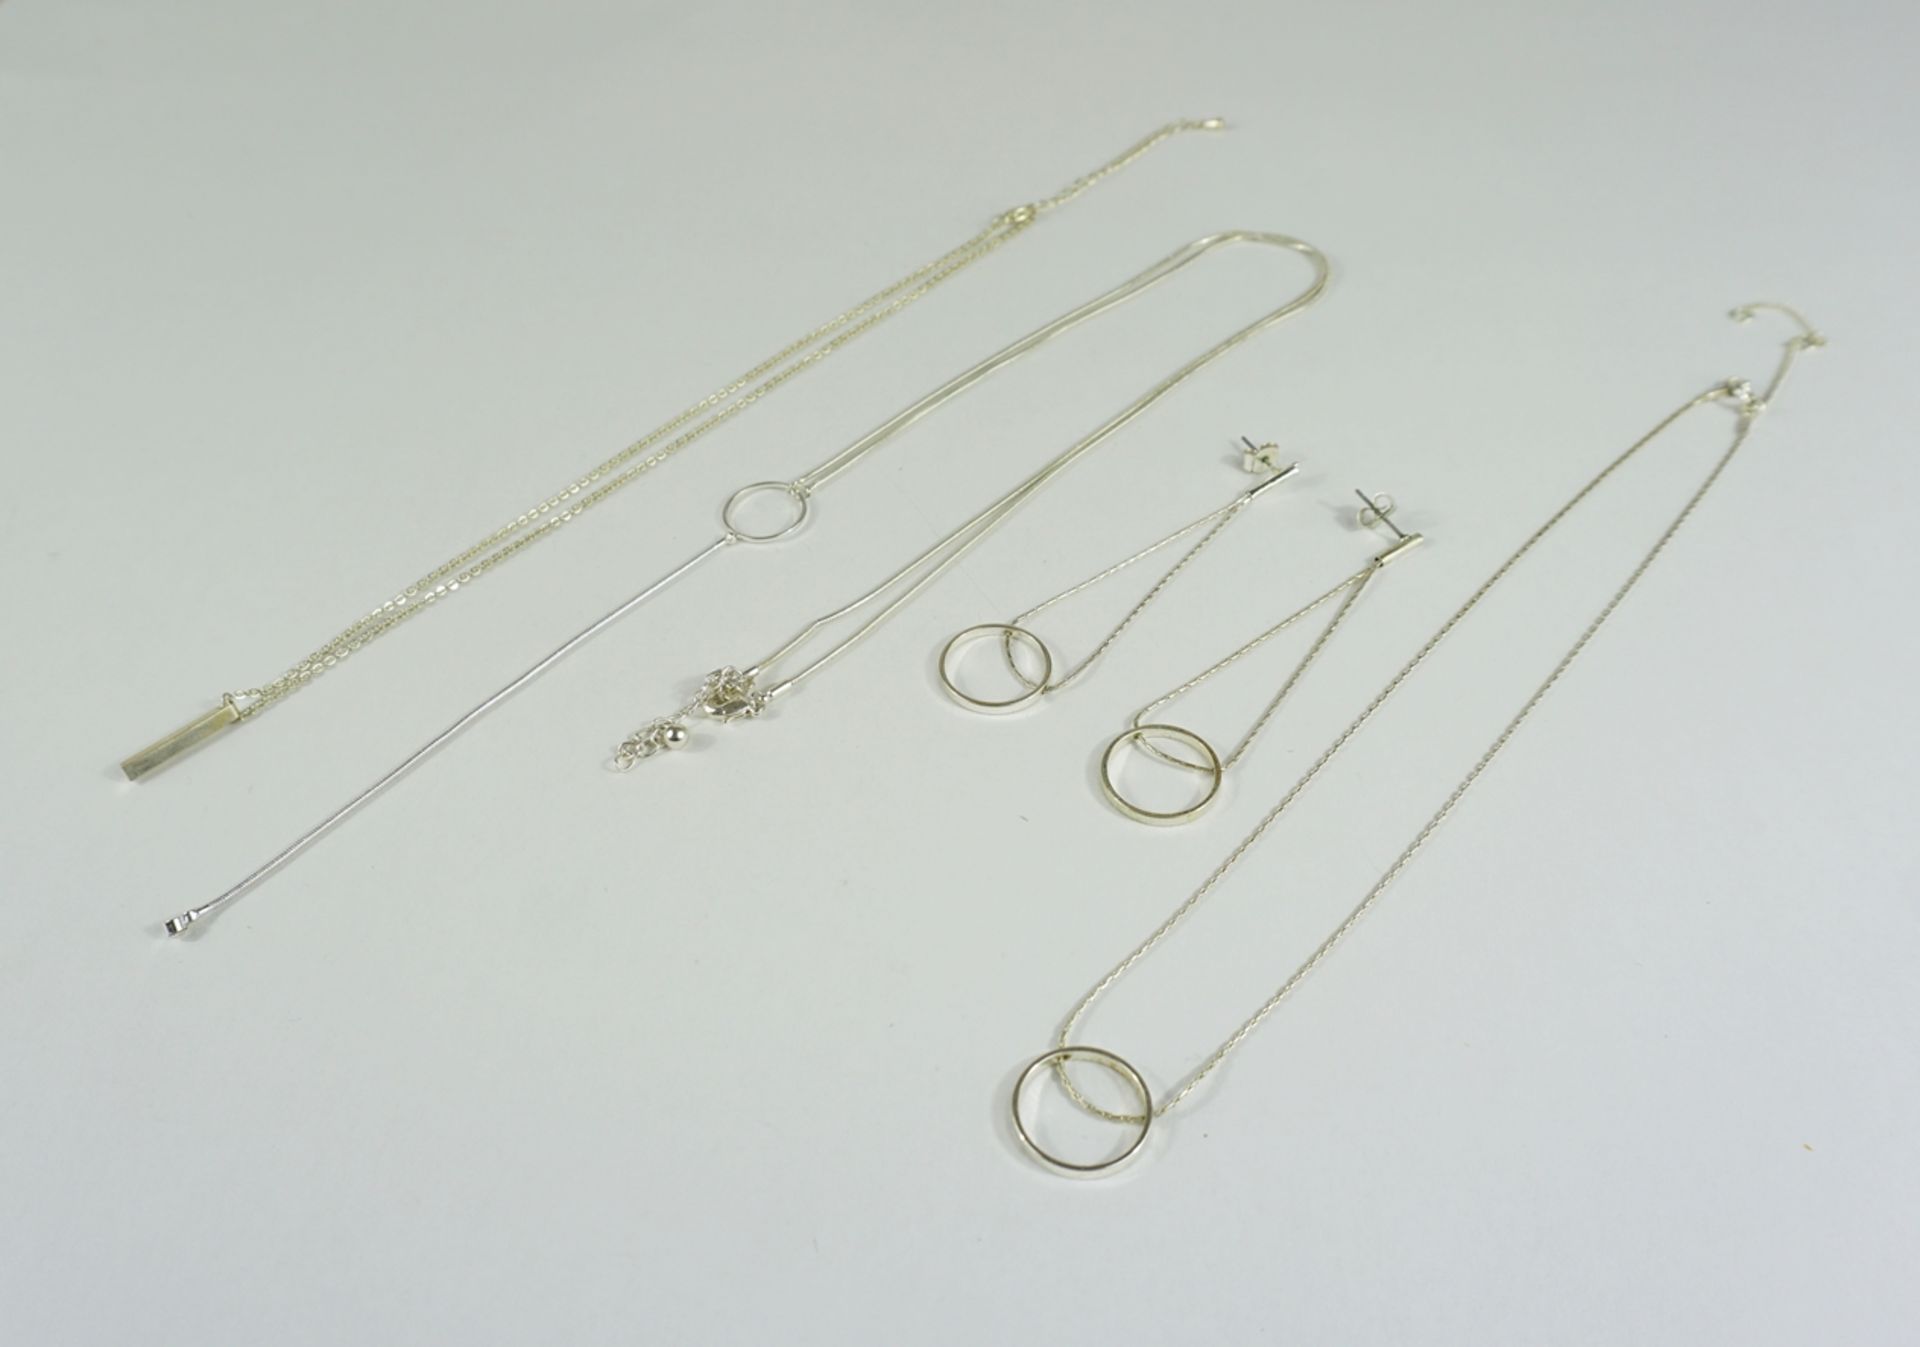 Kette mit Stabanhänger, 2 Colliers und 1 Paar Ohrringe, versilbert - Bild 2 aus 5